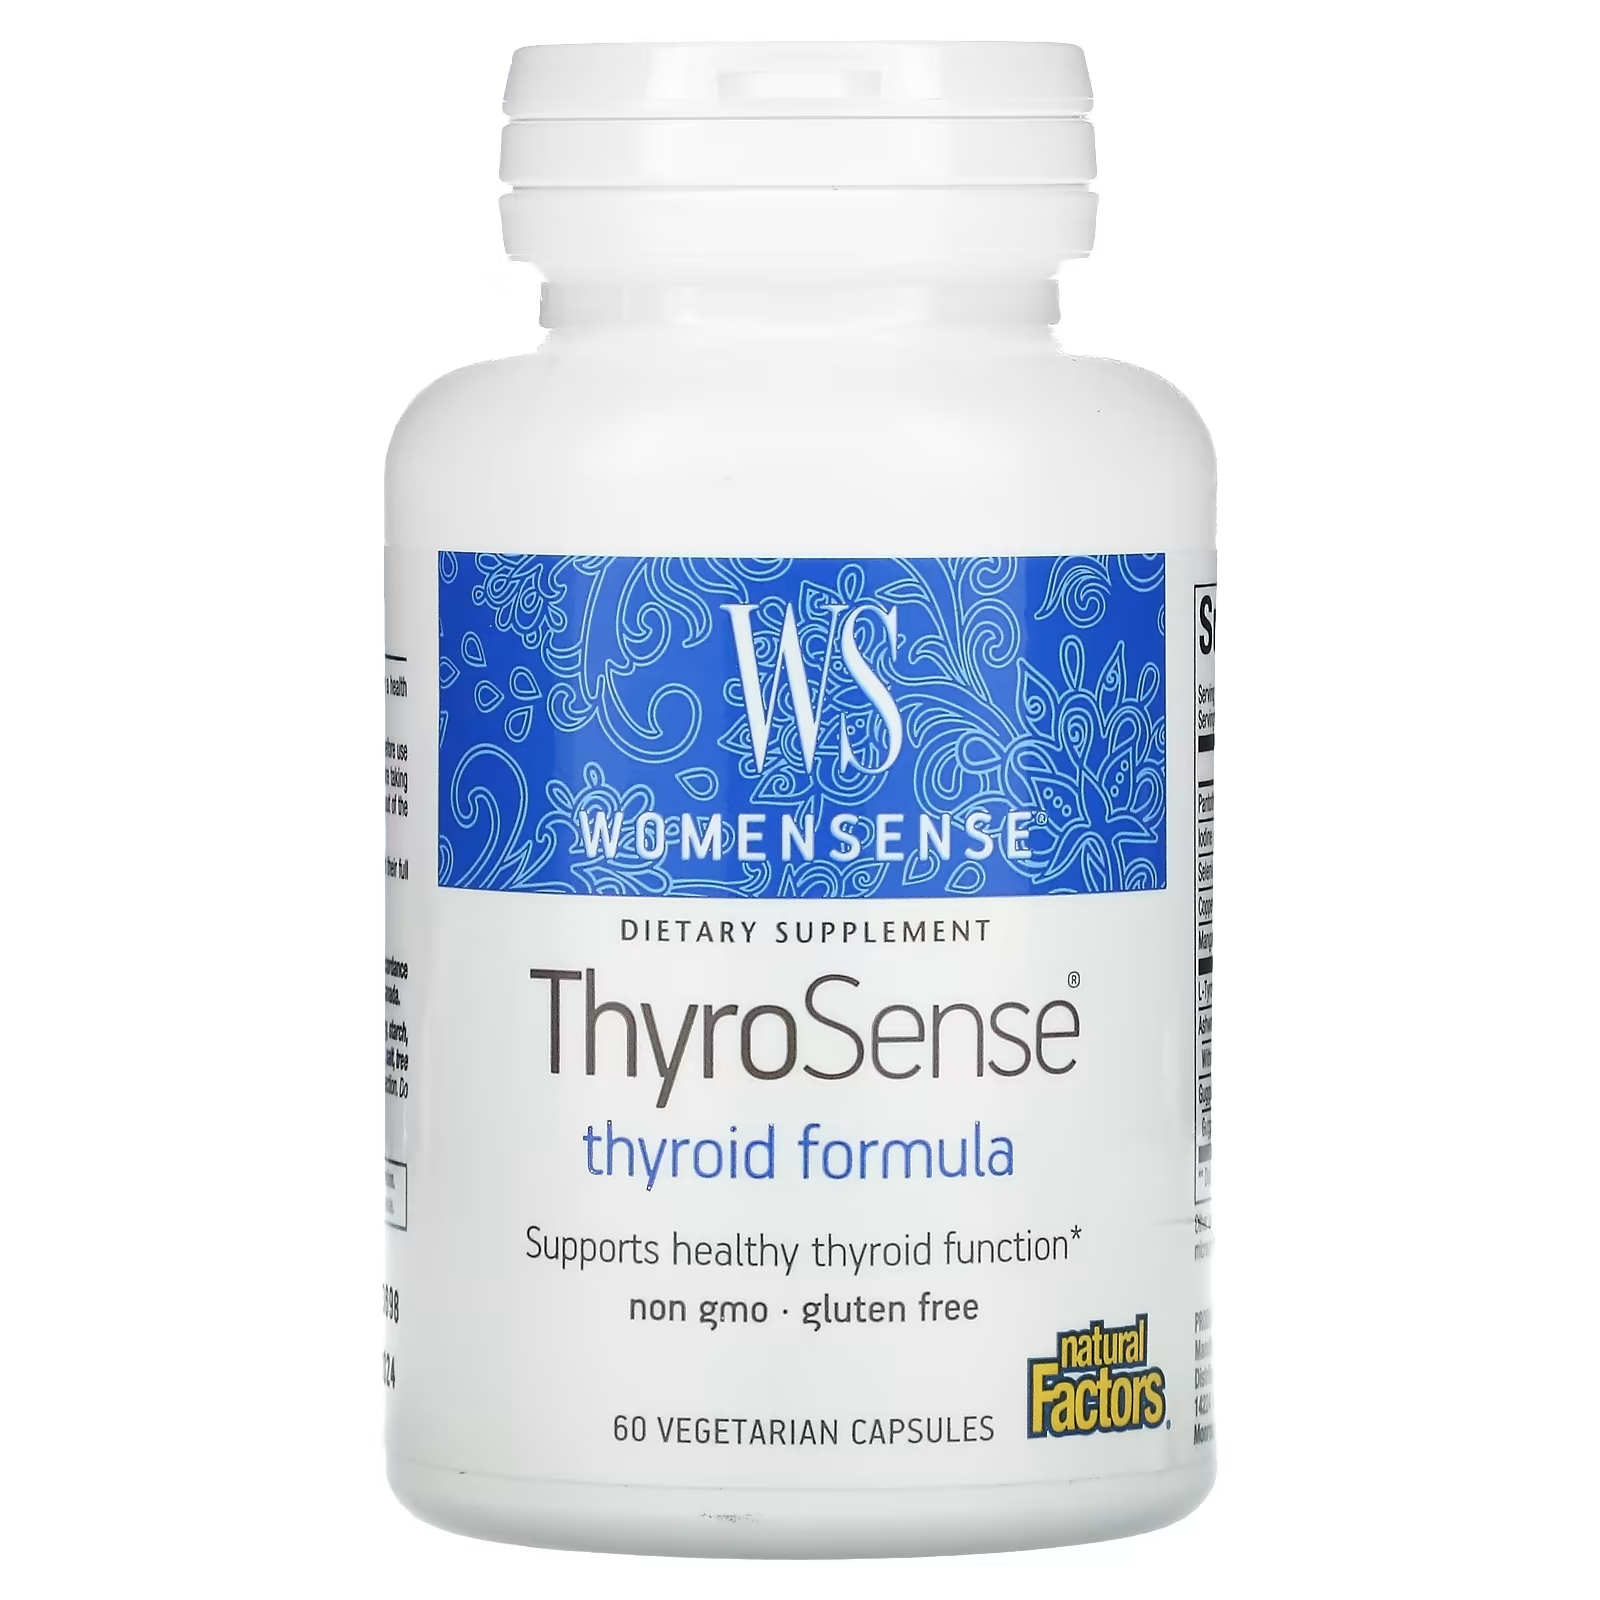 Natural Factors WomenSense ThyroSense средство для щитовидной железы, 60 вегетарианских капсул emerald laboratories здоровье щитовидной железы 60 вегетарианских капсул